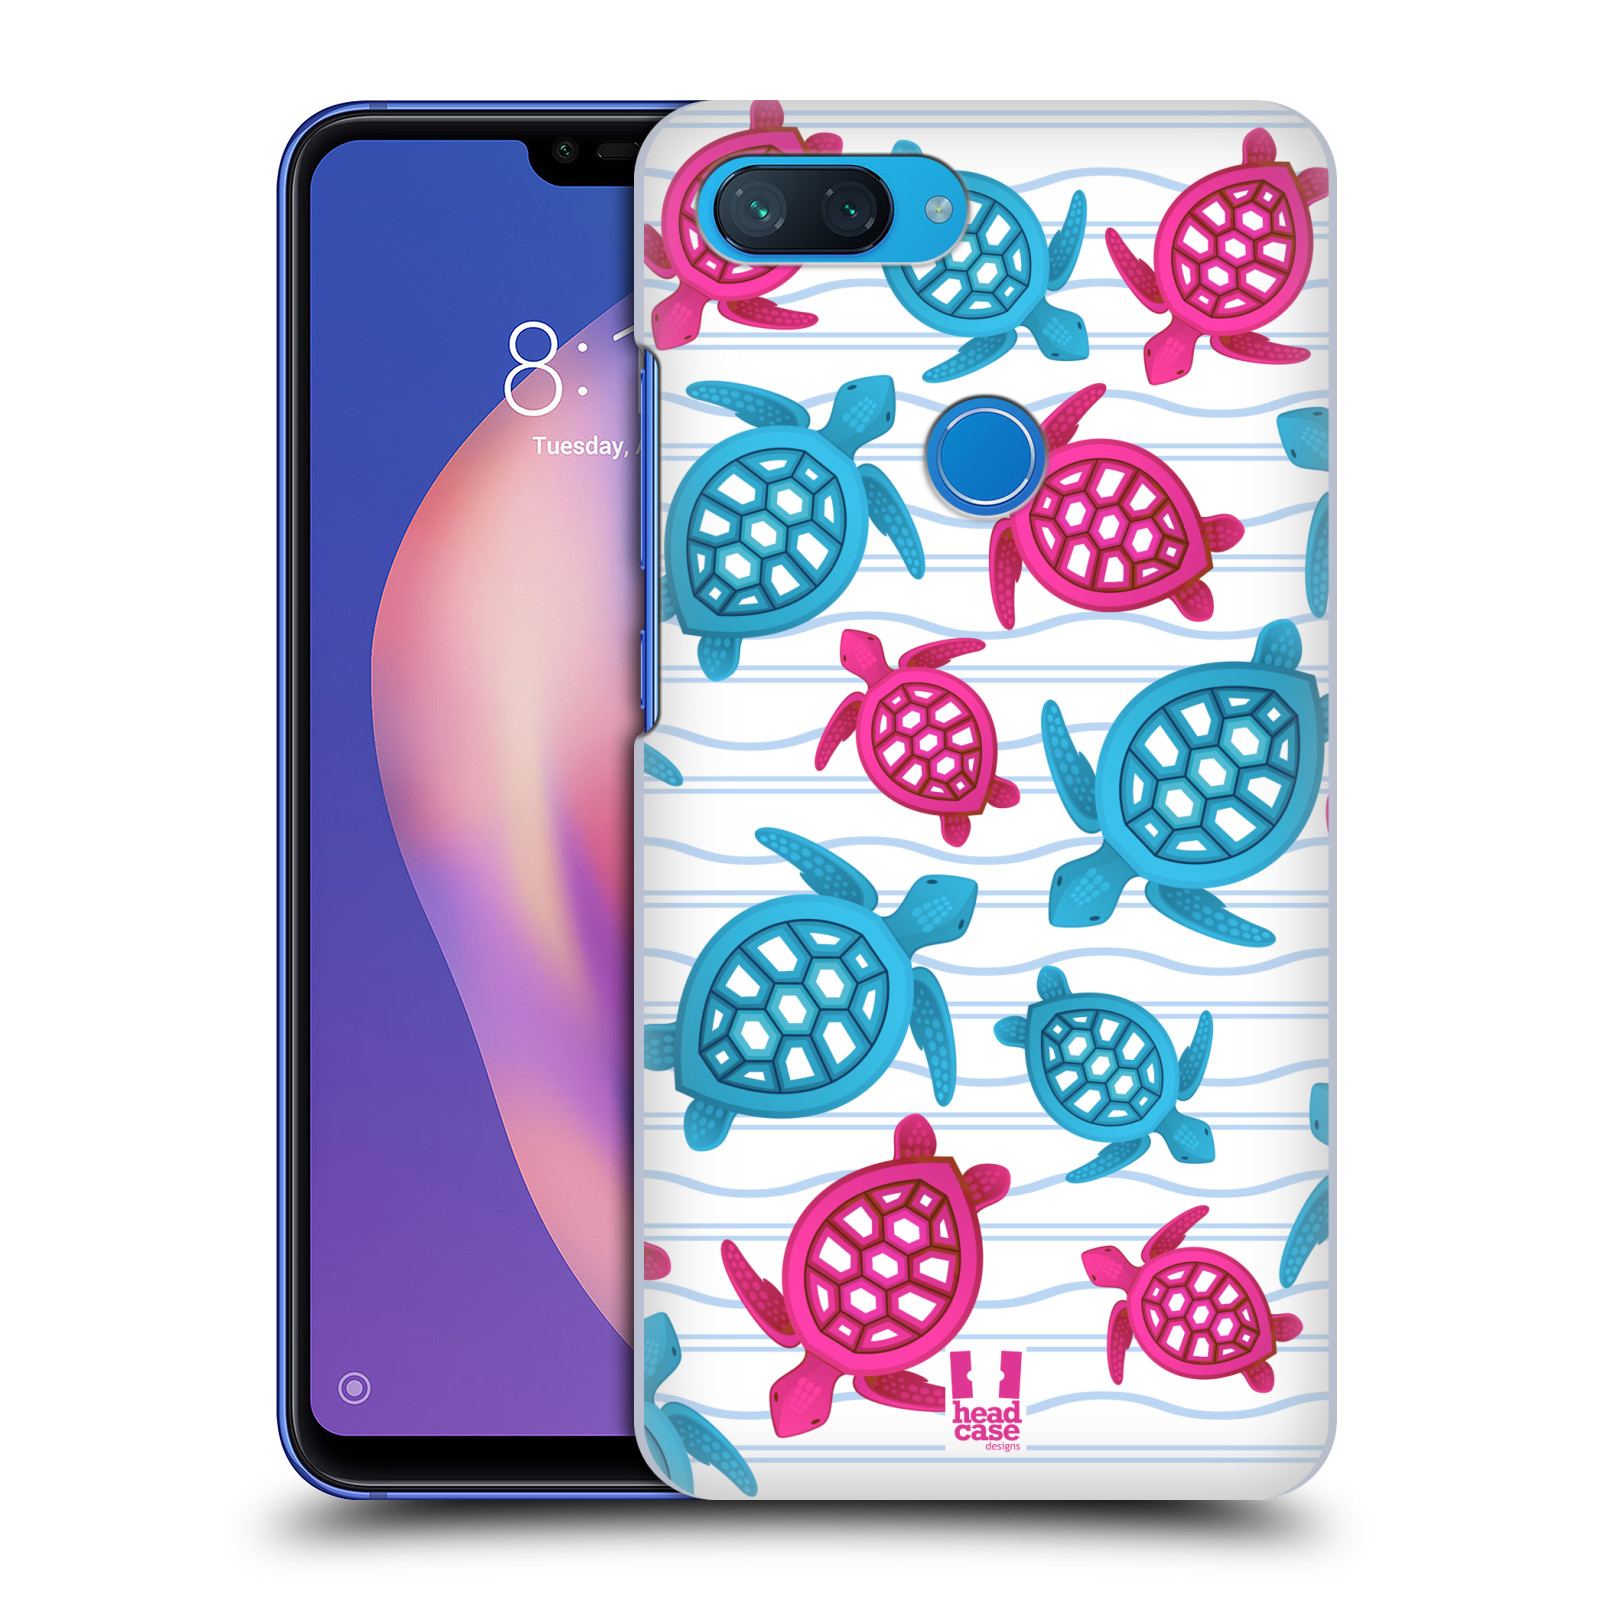 Zadní obal pro mobil Xiaomi Mi 8 LITE - HEAD CASE - kreslený mořský vzor želvičky